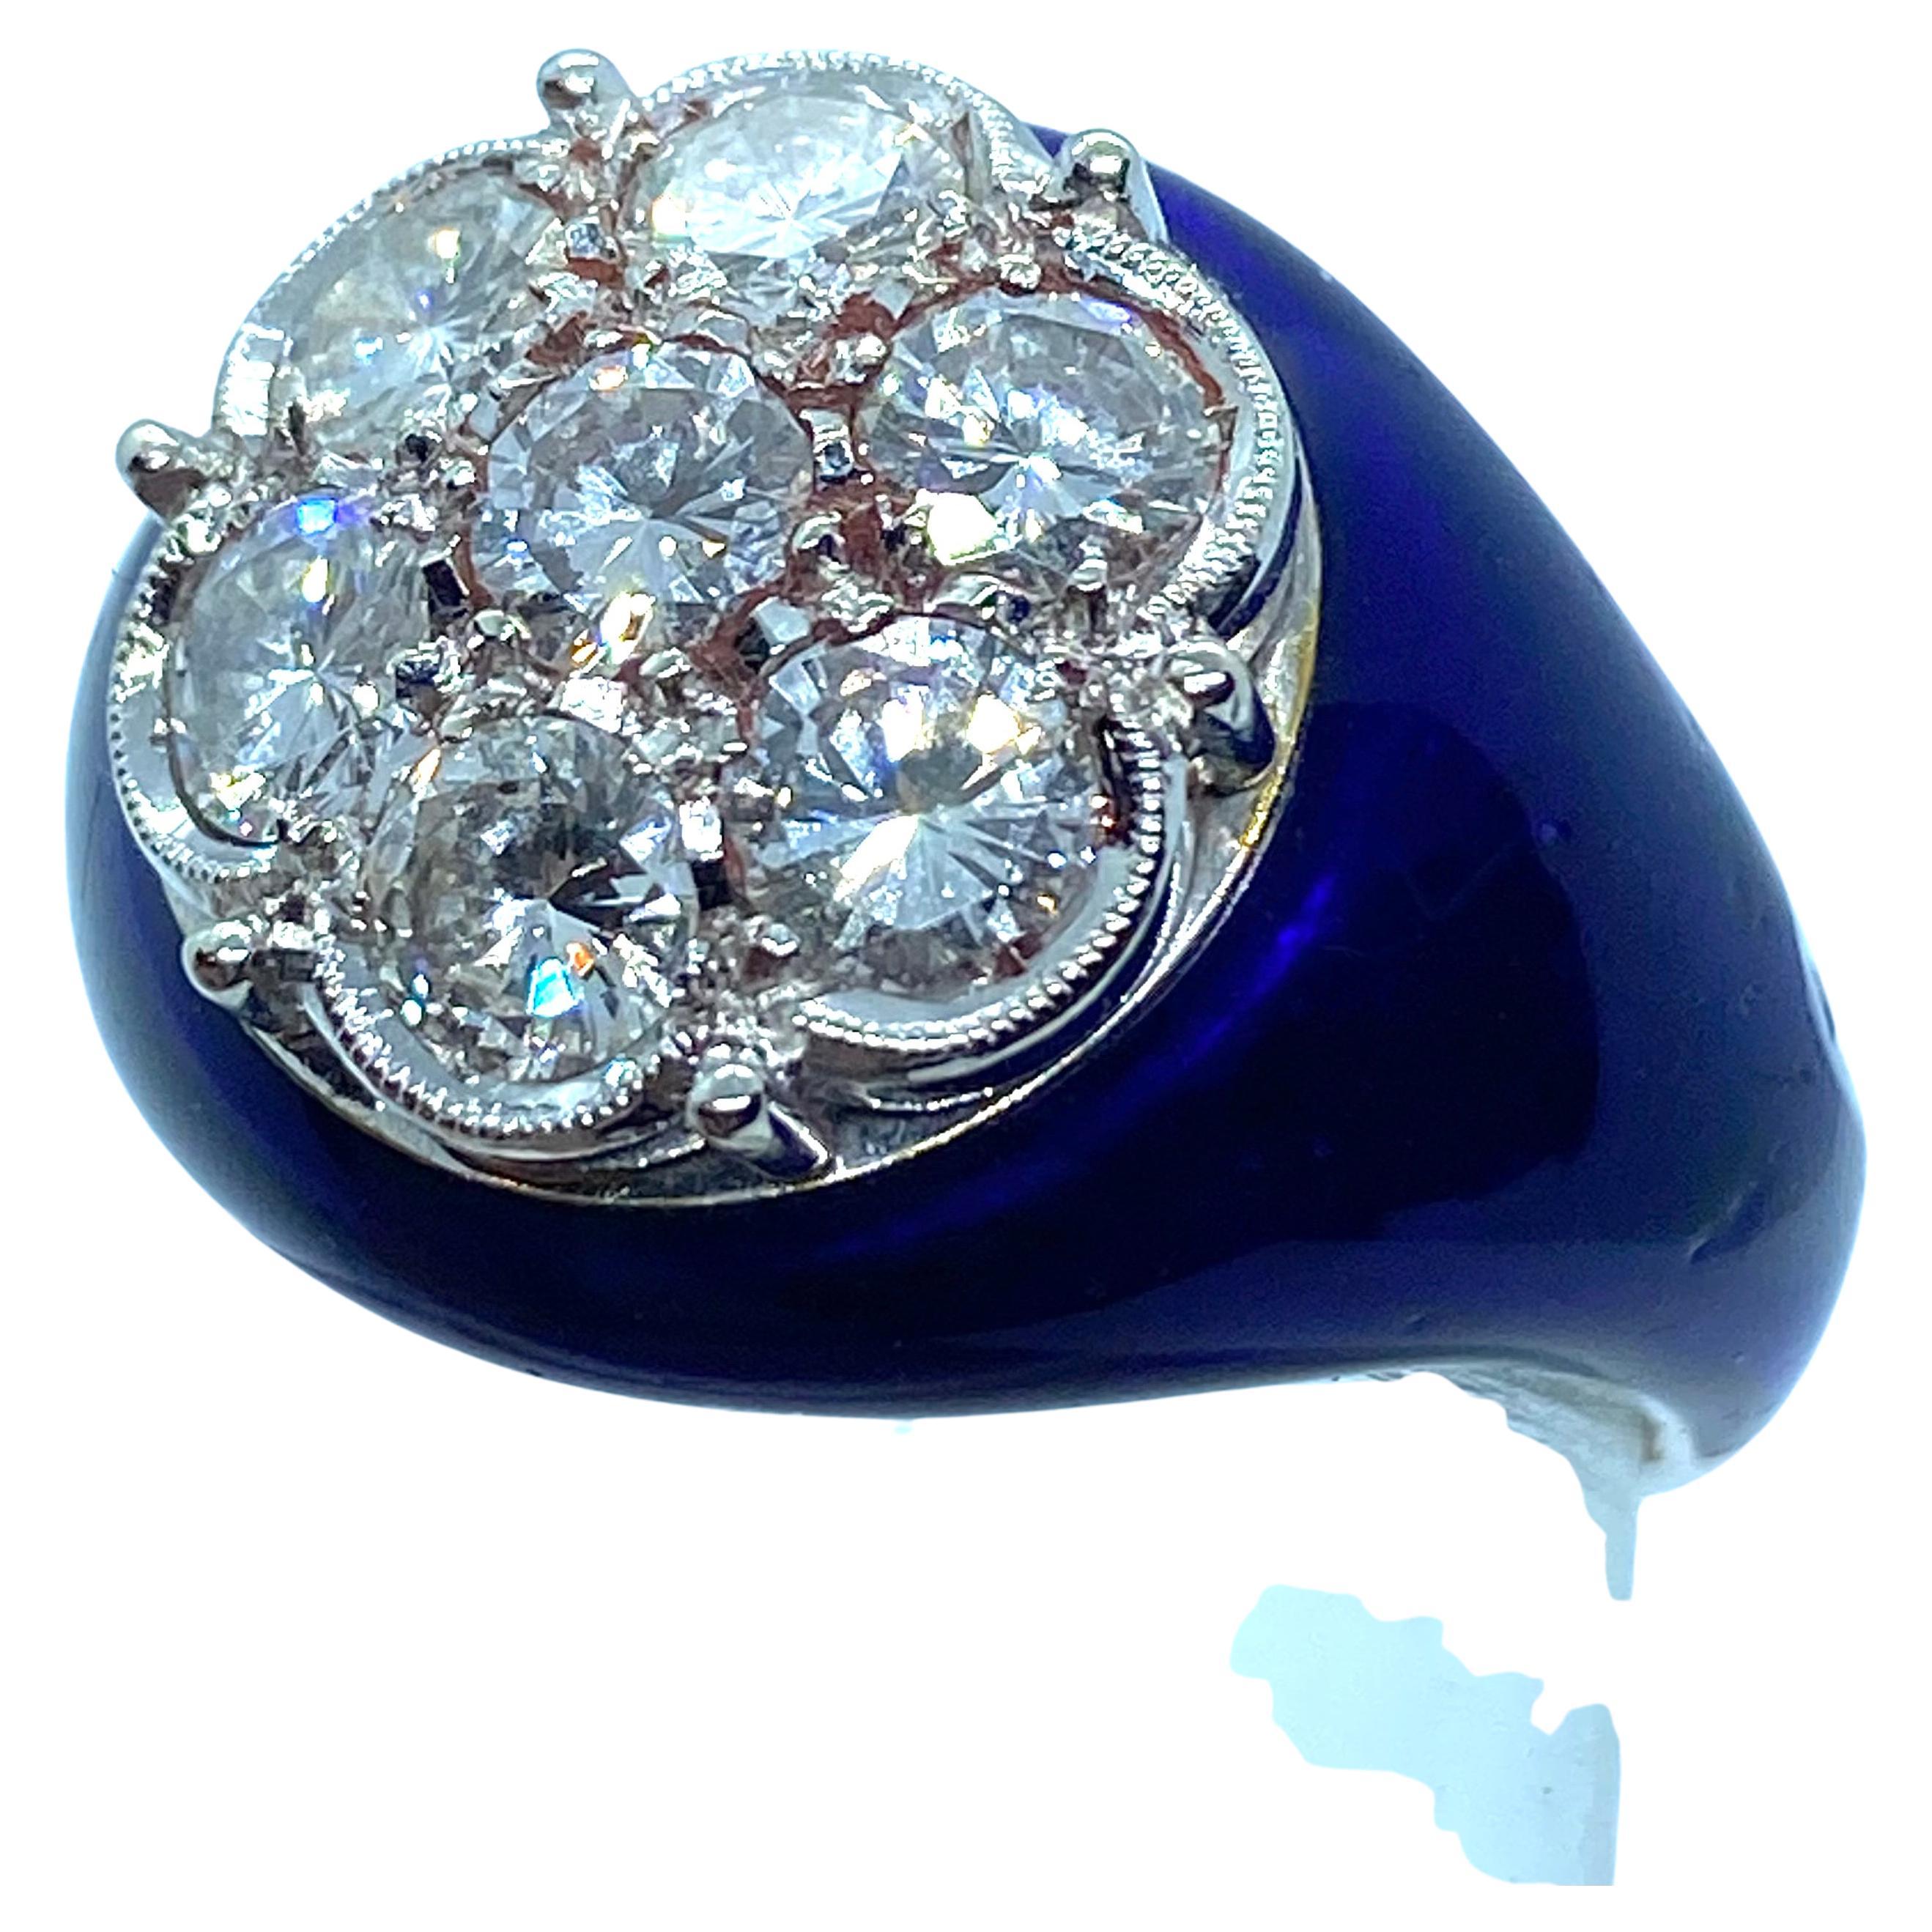 Runder Ring aus 18 Karat Weißgold, blau emailliert.
Er trägt 7 natürliche Diamanten im Brillantschliff mit einem Gesamtgewicht von über 3 Karat.  
Ausgezeichnete Farbe und Reinheit
Italienische Produktion in der zweiten Hälfte des XX.
